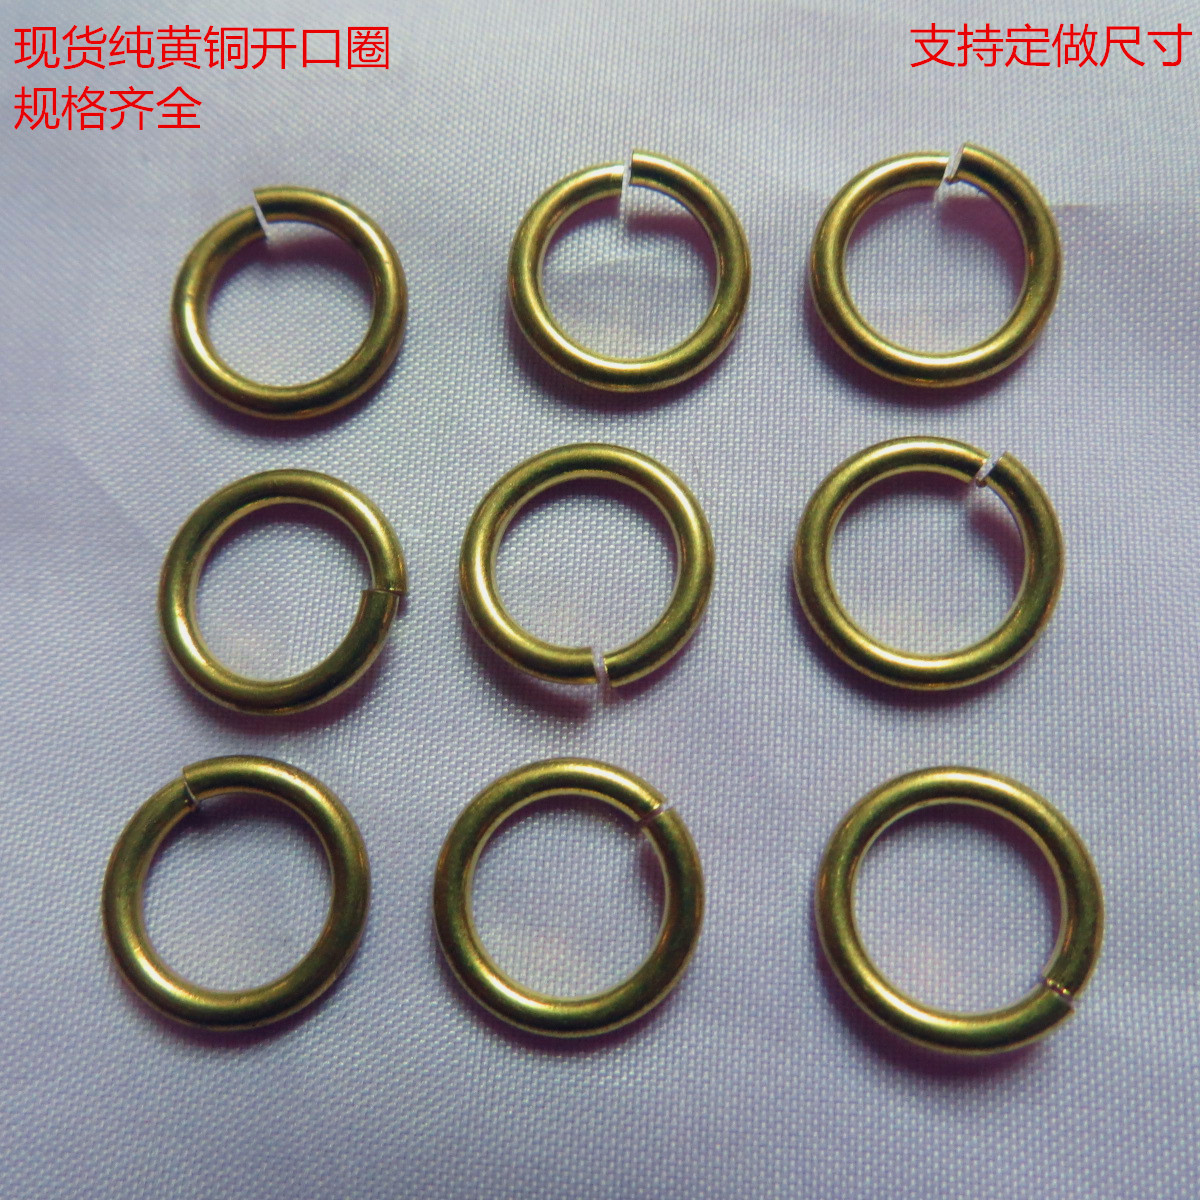 厂家批发1.2线切割开口单圈 黄铜圆环DIY饰品配件 毛球挂件開口環